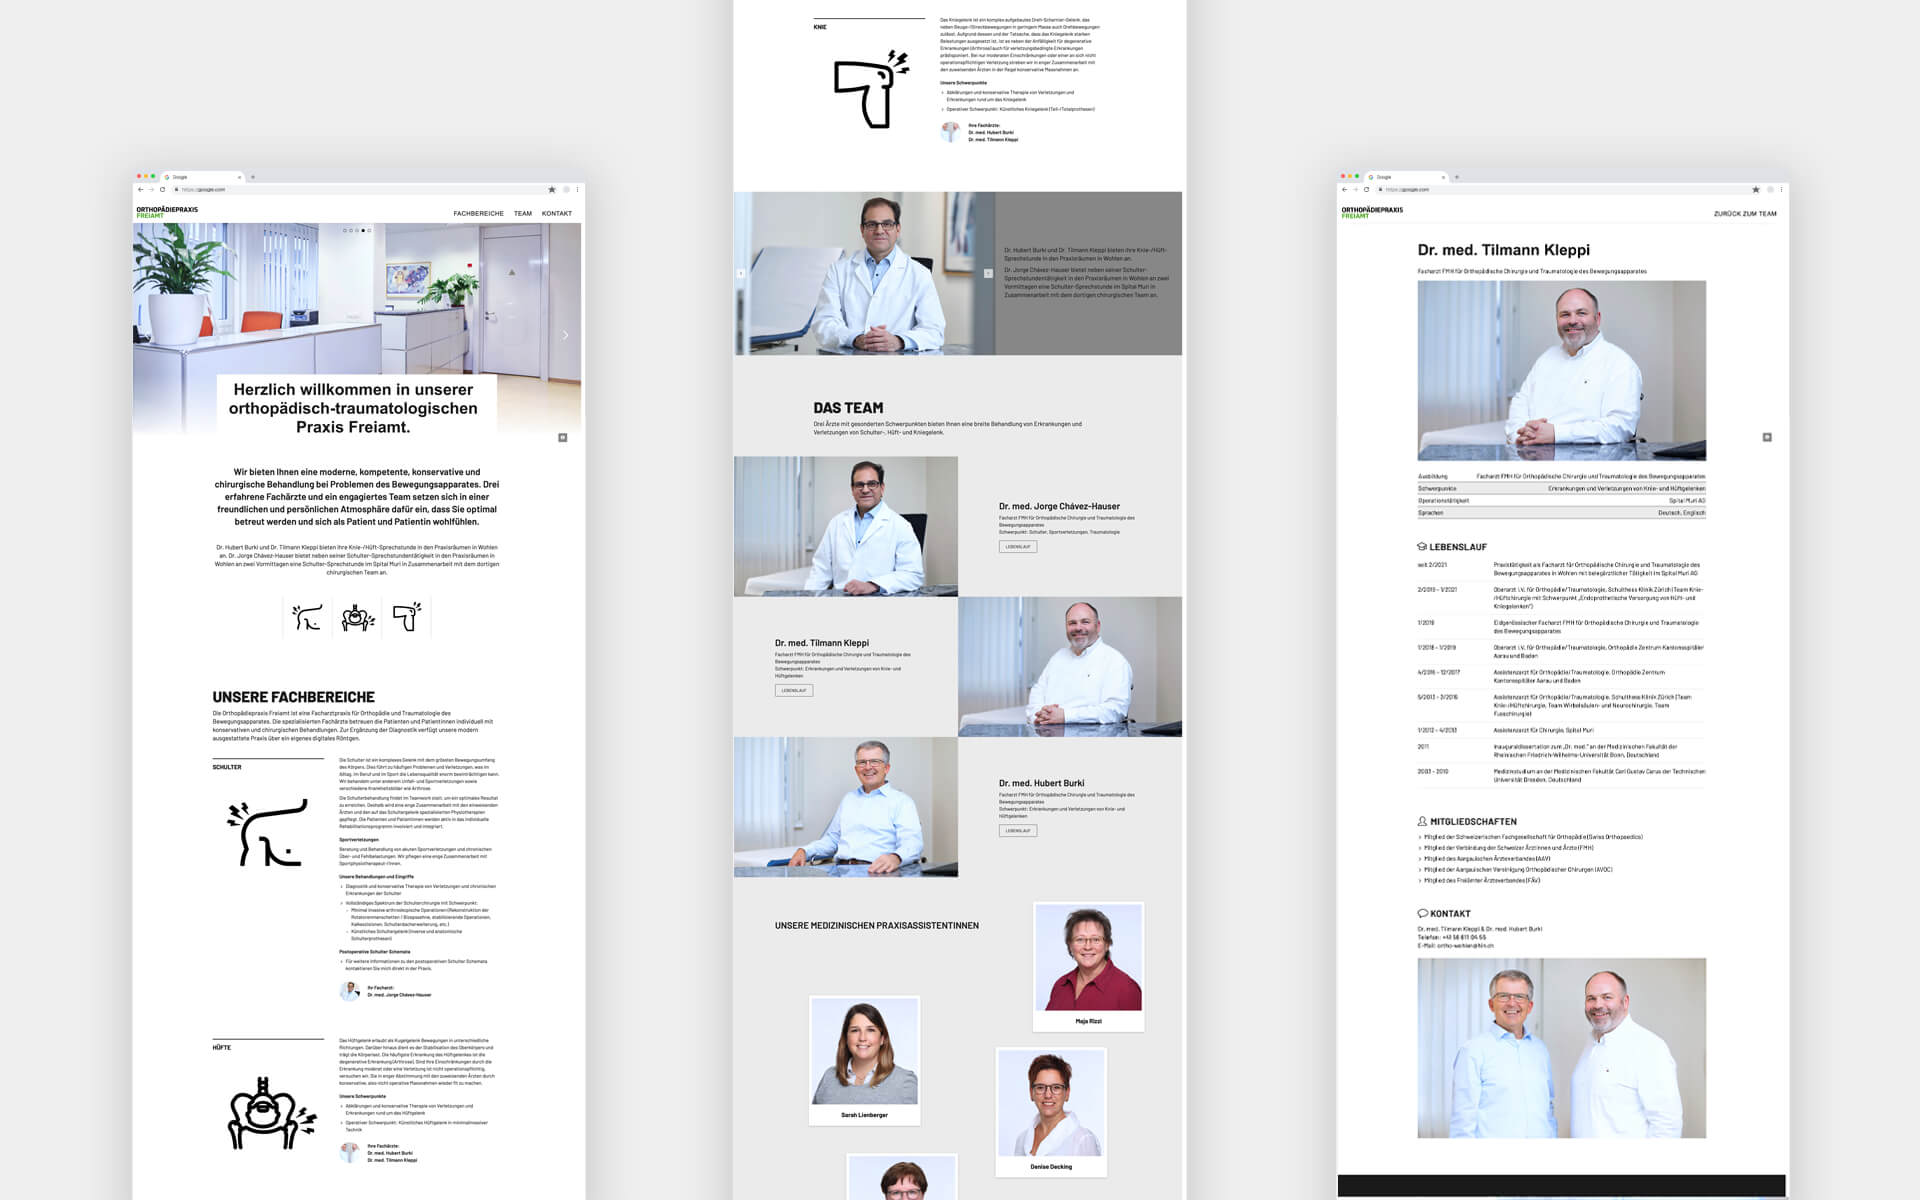 Corporate Design und Webdesign, Orthopädiepraxis Freiamt in der Schweiz, Website Wireframe, Struktur und Inhalte